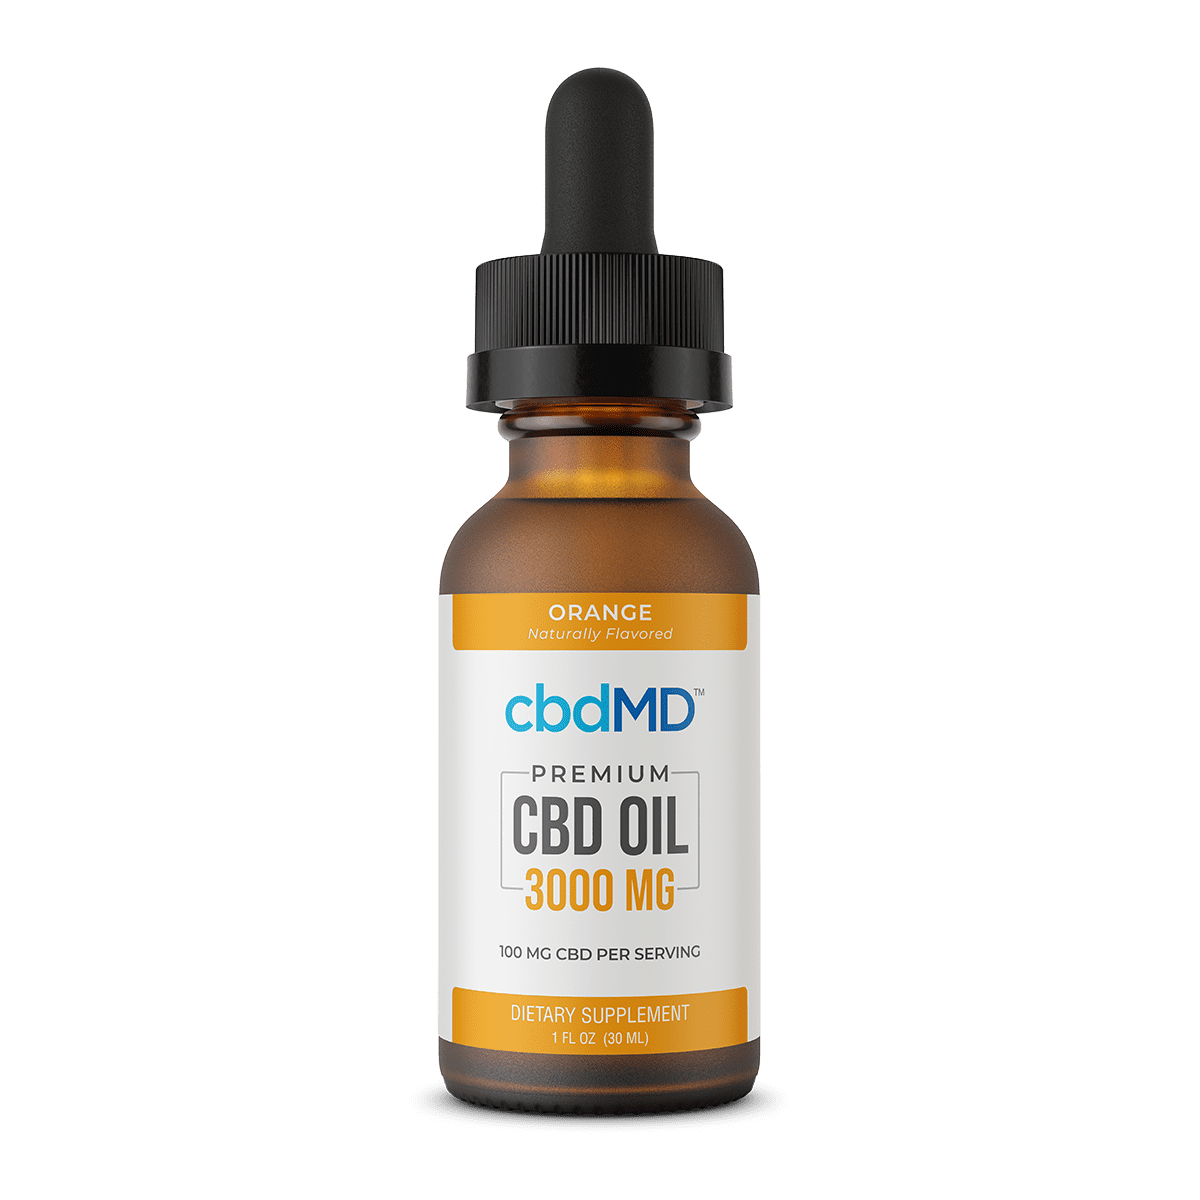 CbdMD CBD Oil Tincture - Orange - 3000 mg image1